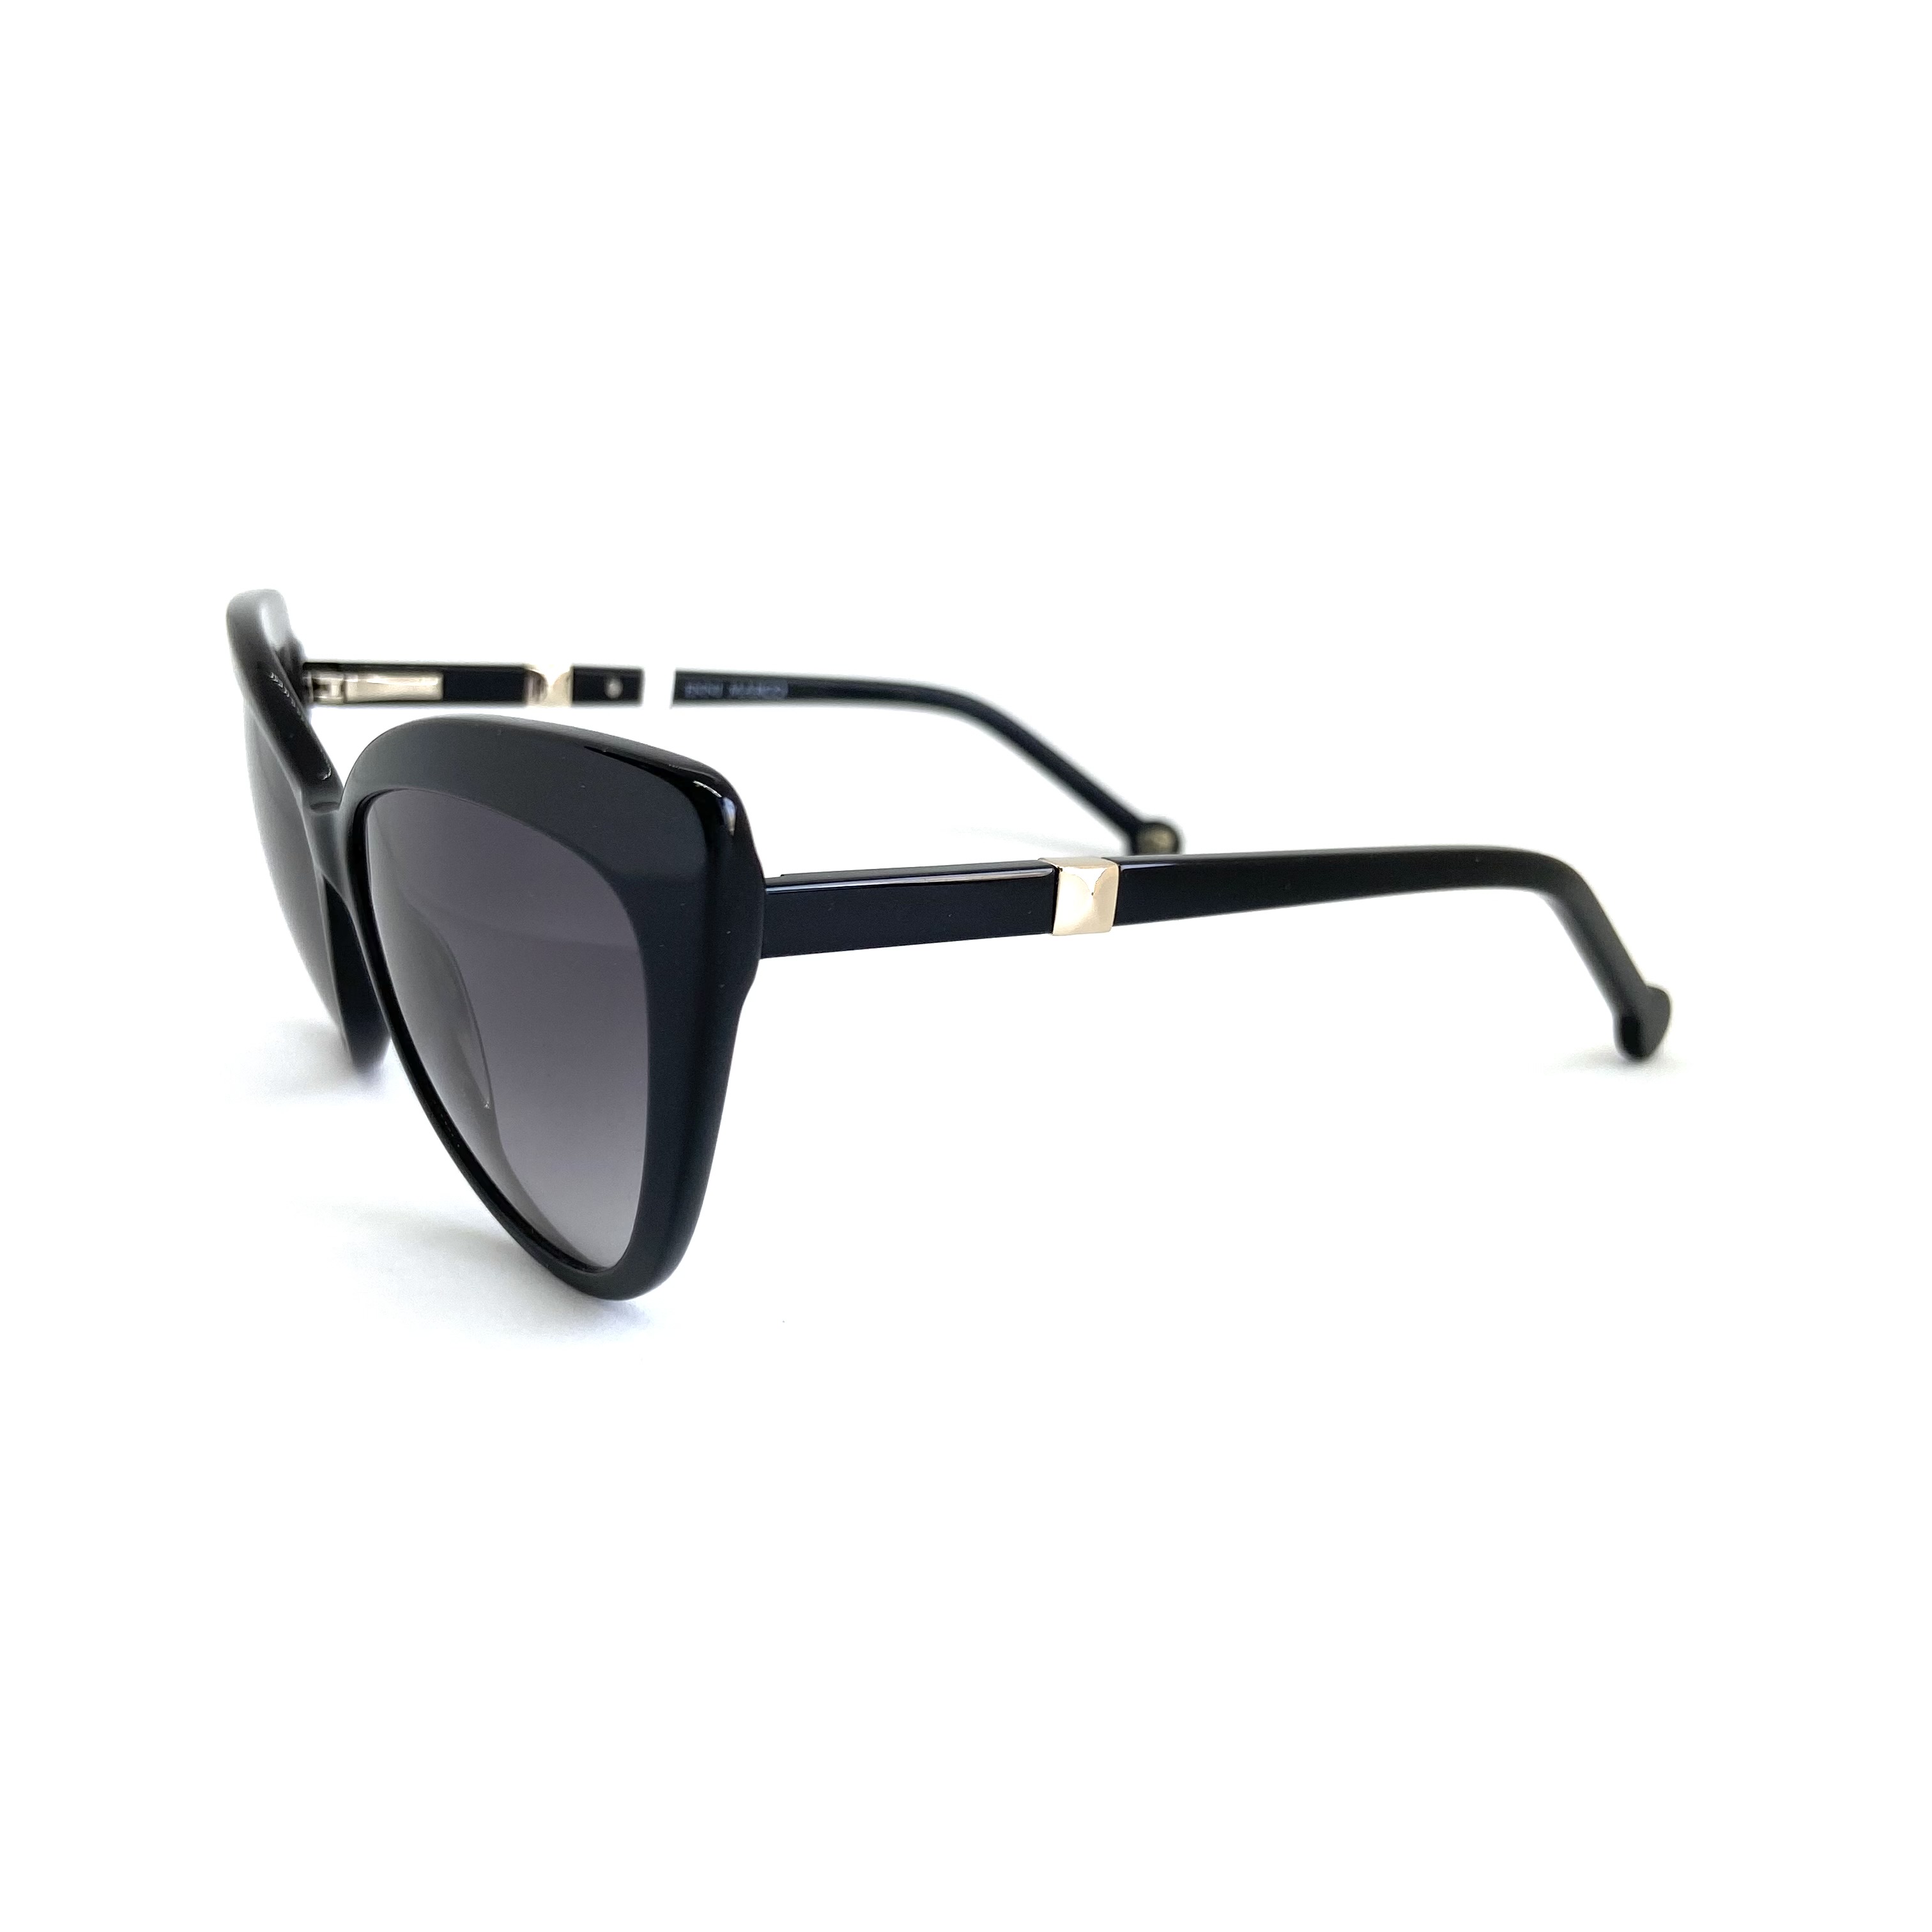 Солнцезащитные очки Enni Marco модель IS 11-491